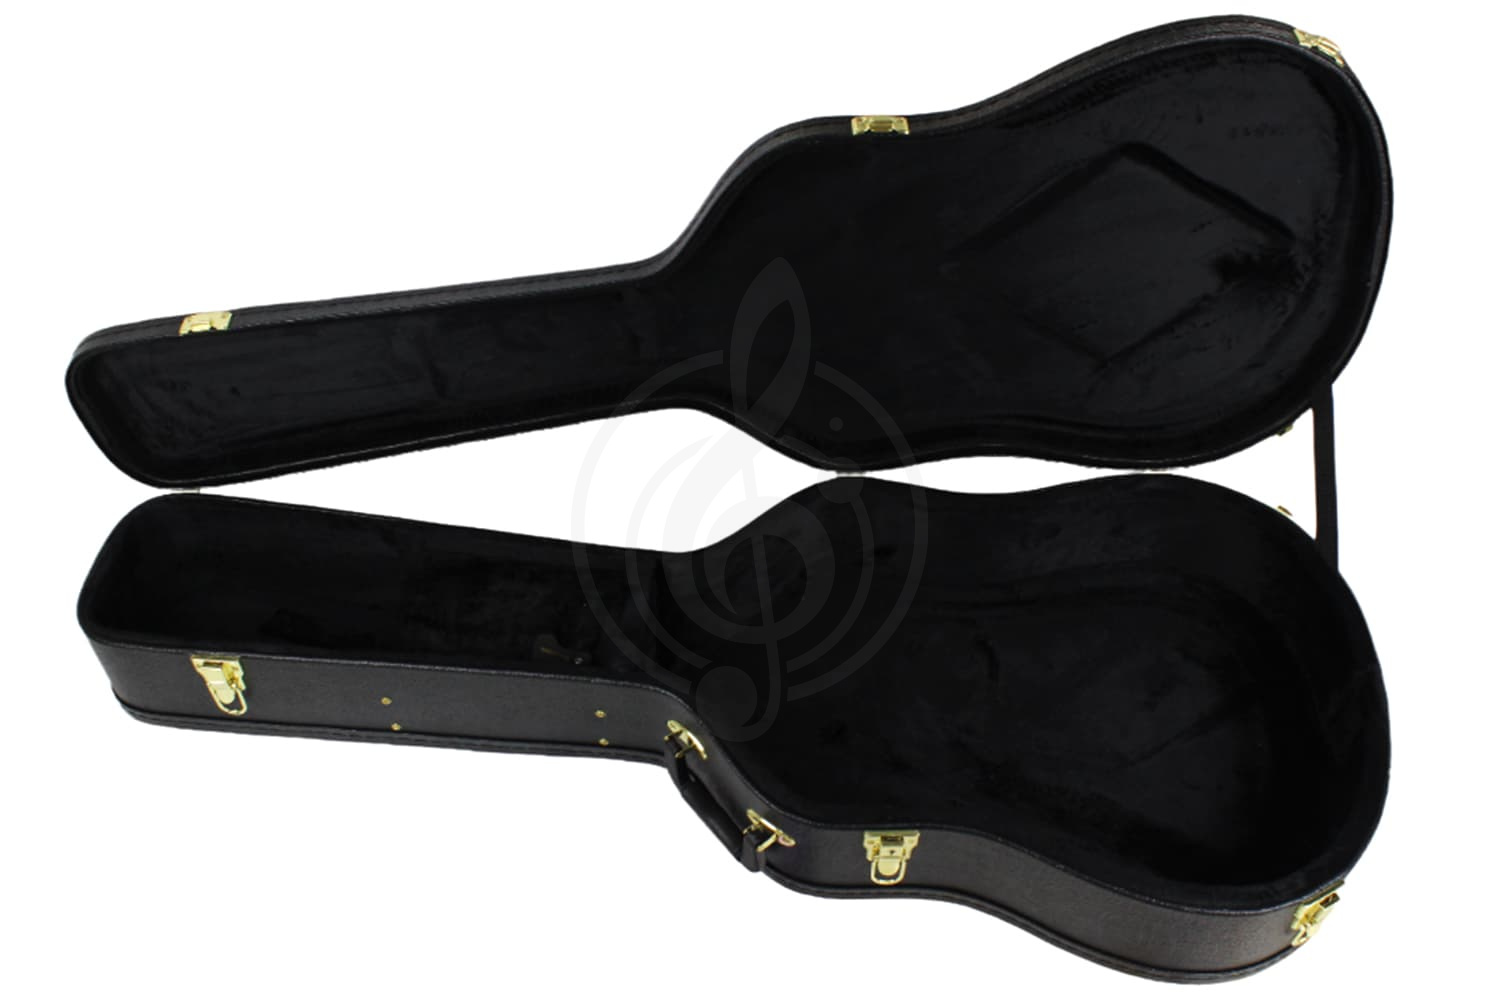 Кейс для акустической гитары Чехлы для акустических гитар OnStage OnStage GCA5000B - кейс для акустической/полуакустической гитары GCA5000B - фото 6